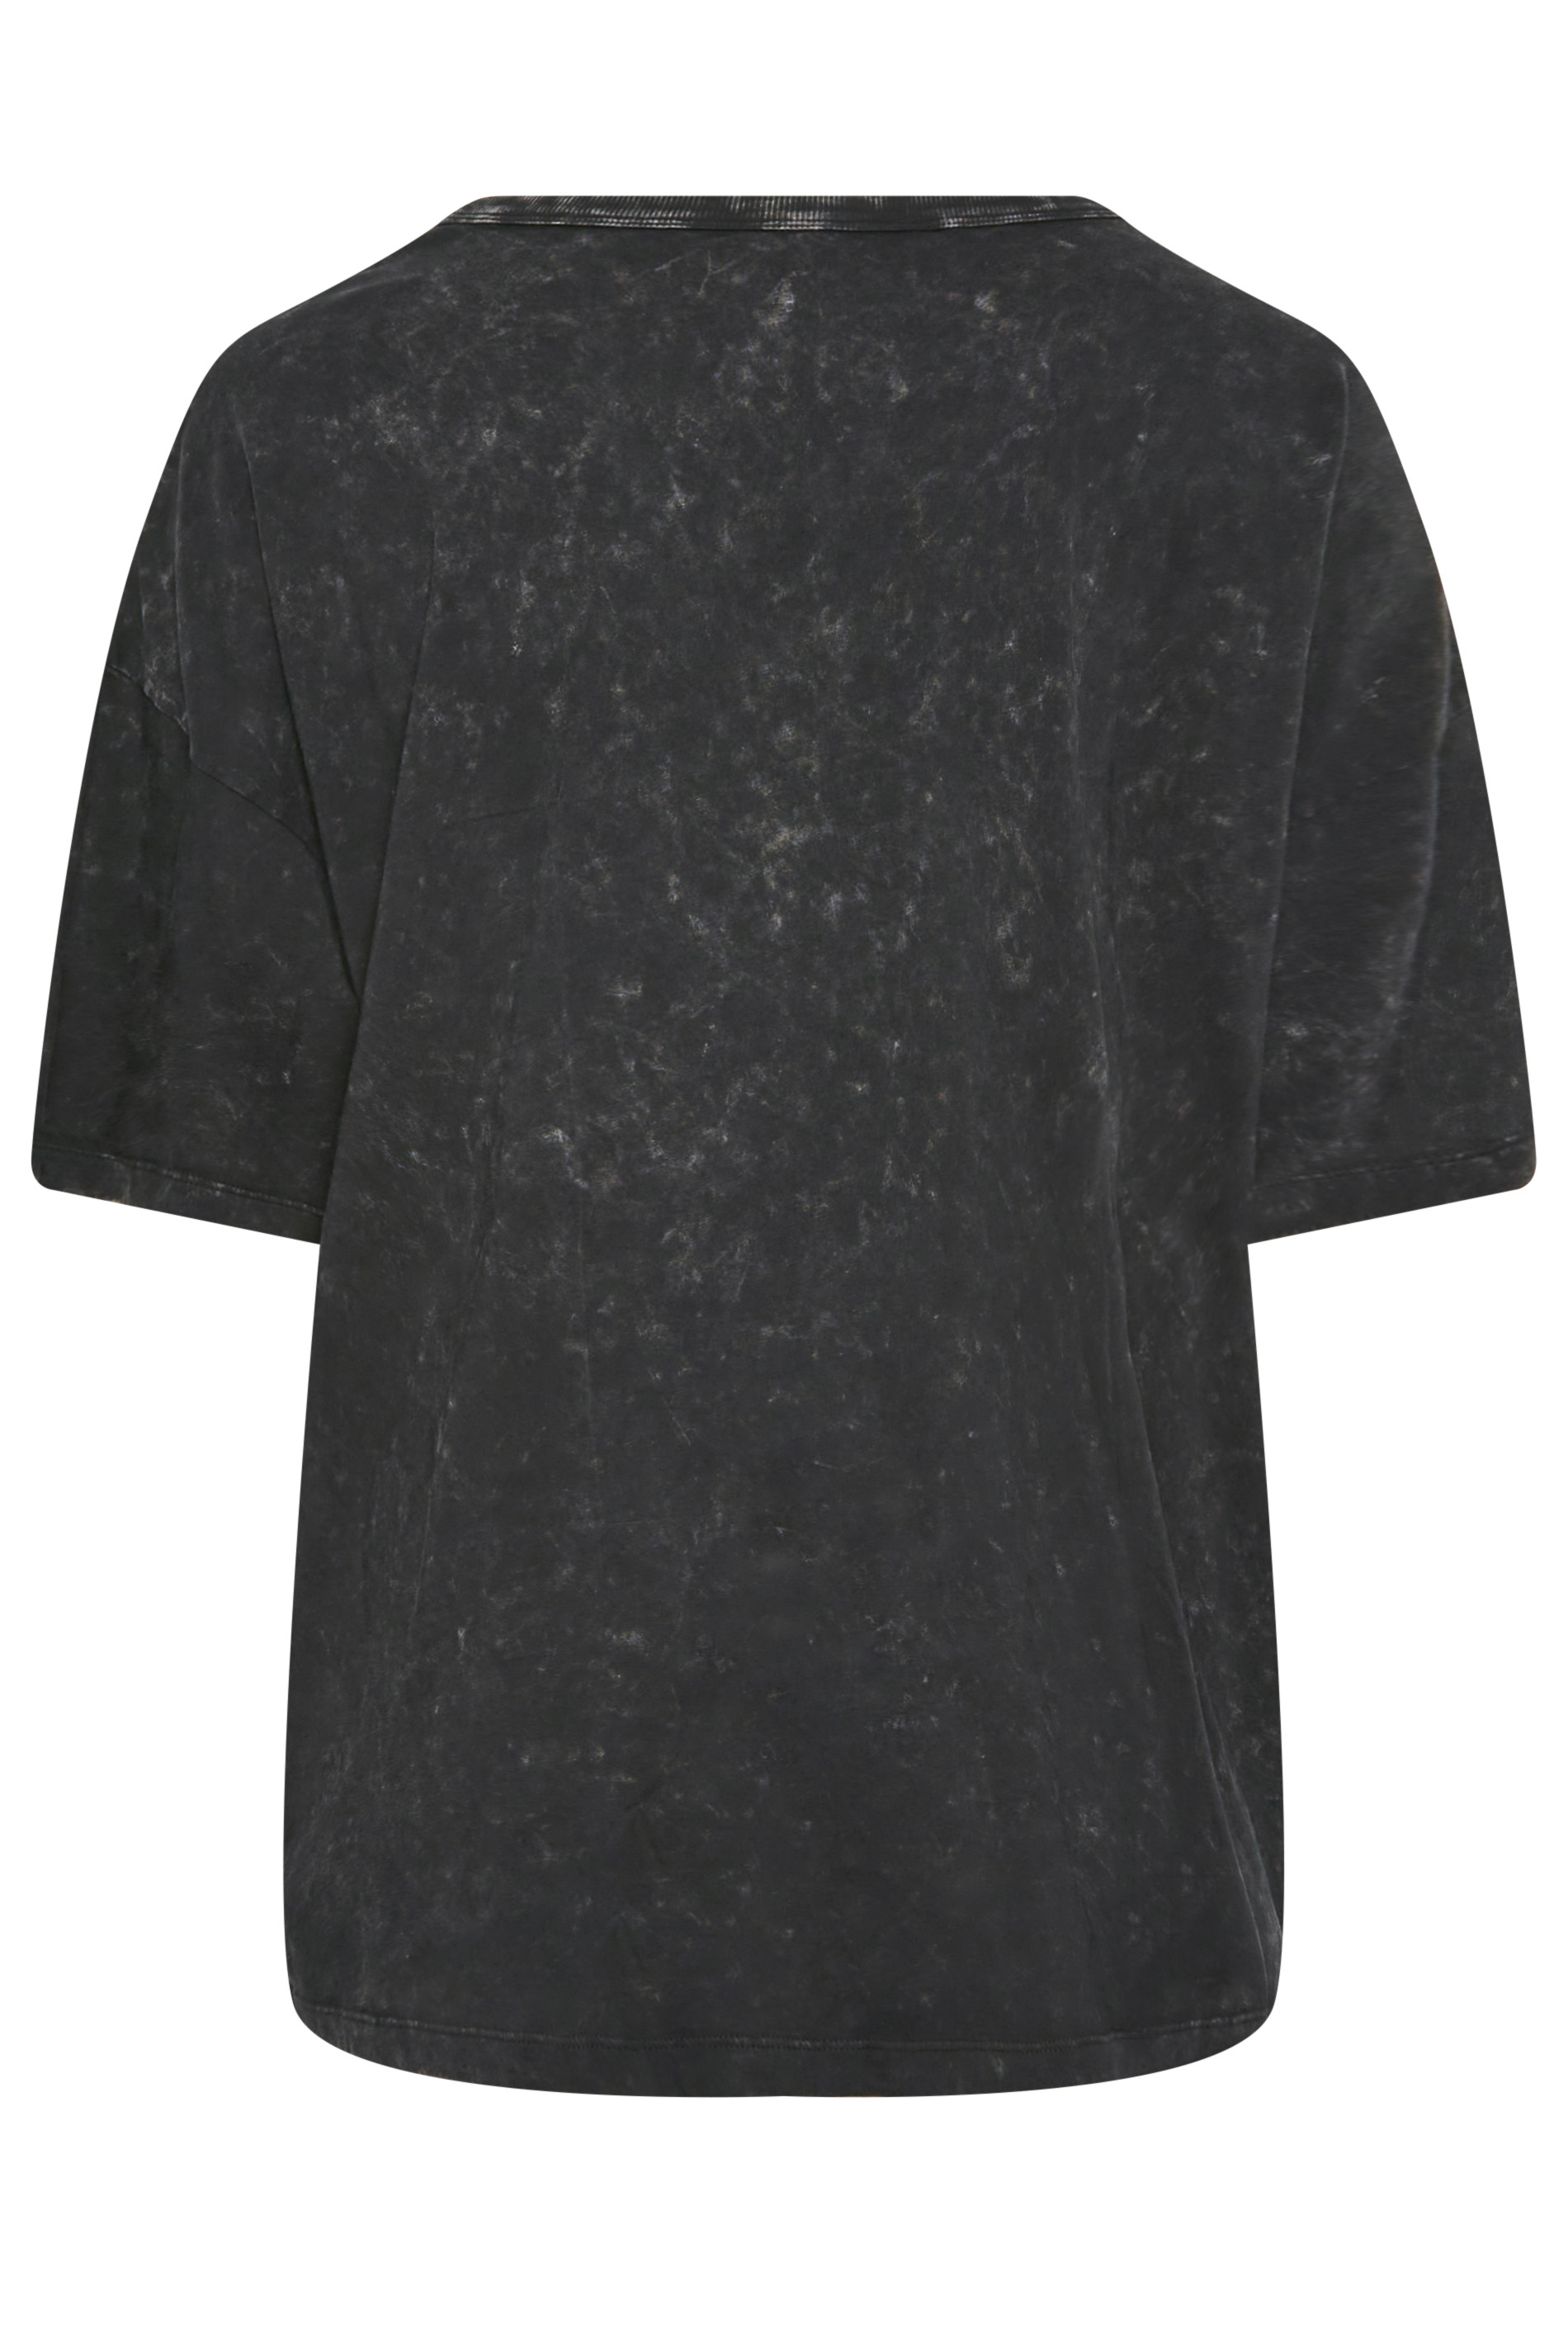 Plus Charcoal Acid Wash T-Shirt, Plus Size